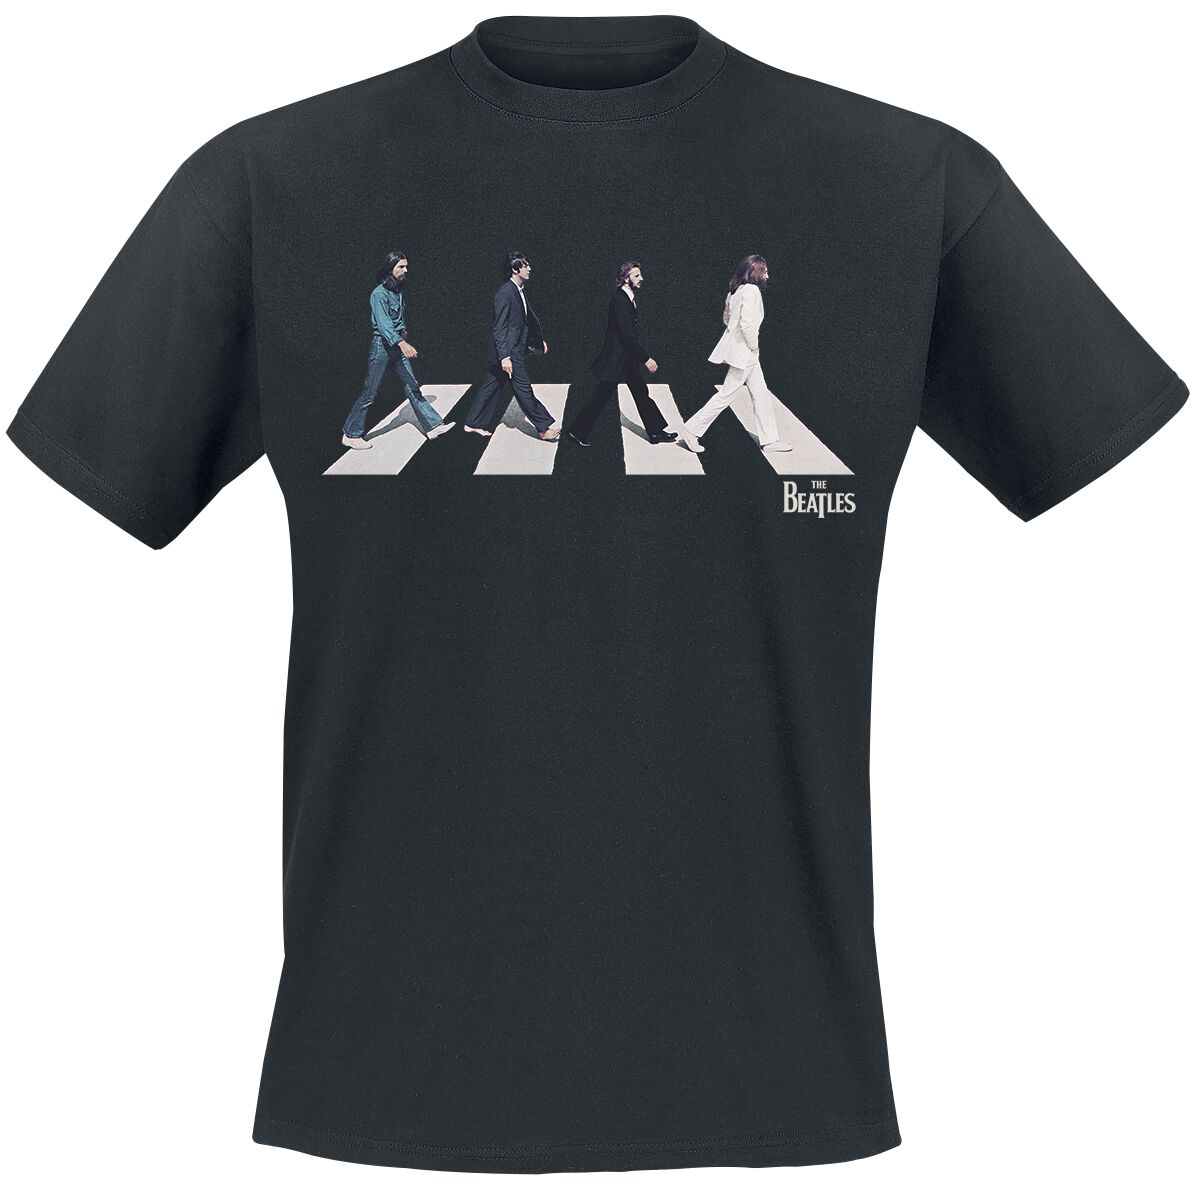 The Beatles T-Shirt - Abbey Road Silhouette - S bis 3XL - für Männer - Größe XXL - schwarz  - Lizenziertes Merchandise!